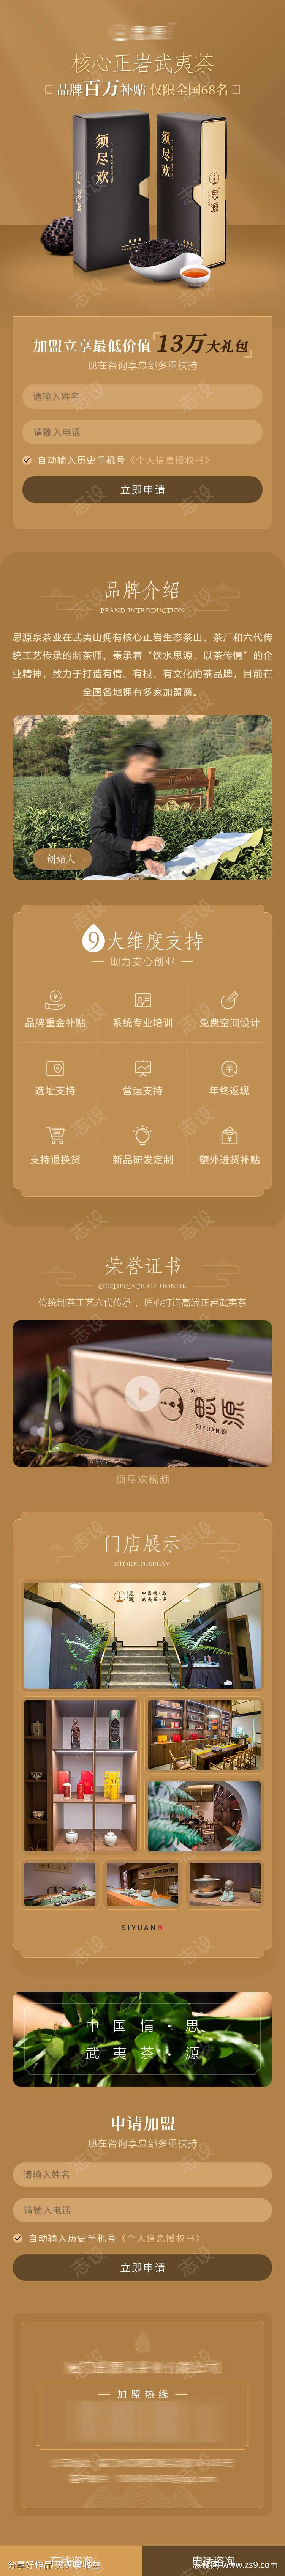 茶业详情页设计